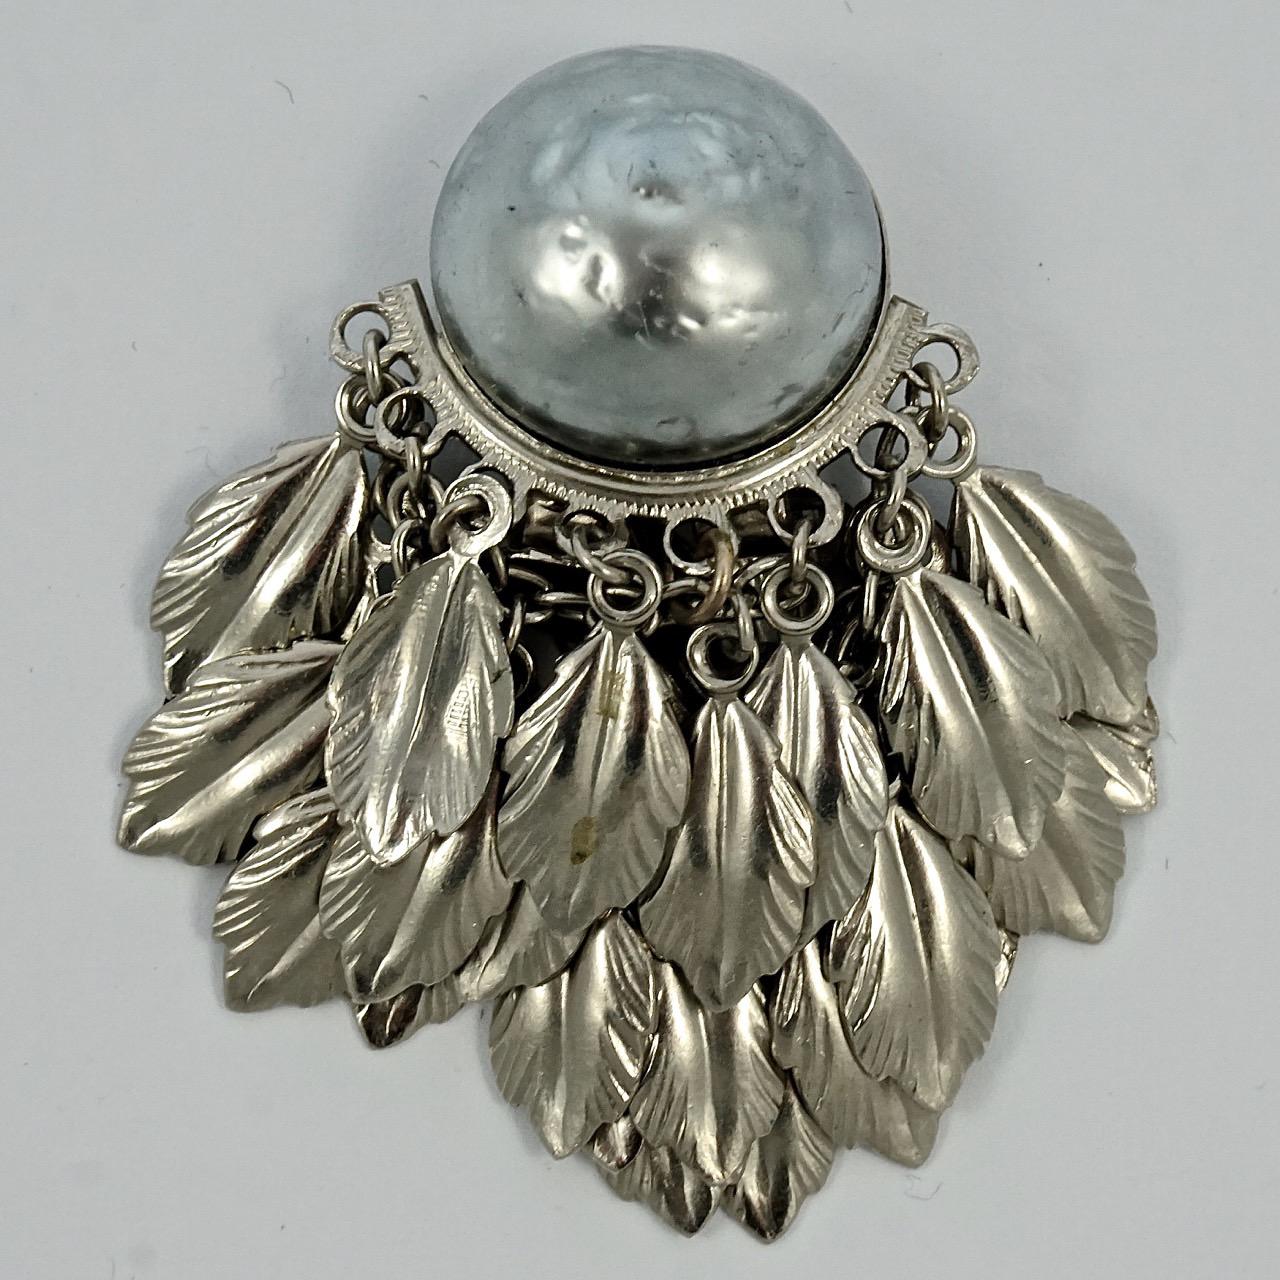 Hübsche silberfarbene Clip-Ohrringe mit grauen Barockperlen und Feder- und Kettentropfen. Die Länge beträgt 4,8 cm / 1,9 Zoll, und die grauen Perlen haben einen Durchmesser von 1,7 cm / .66 Zoll.

Dies sind schöne und ungewöhnliche Vintage-Ohrringe.